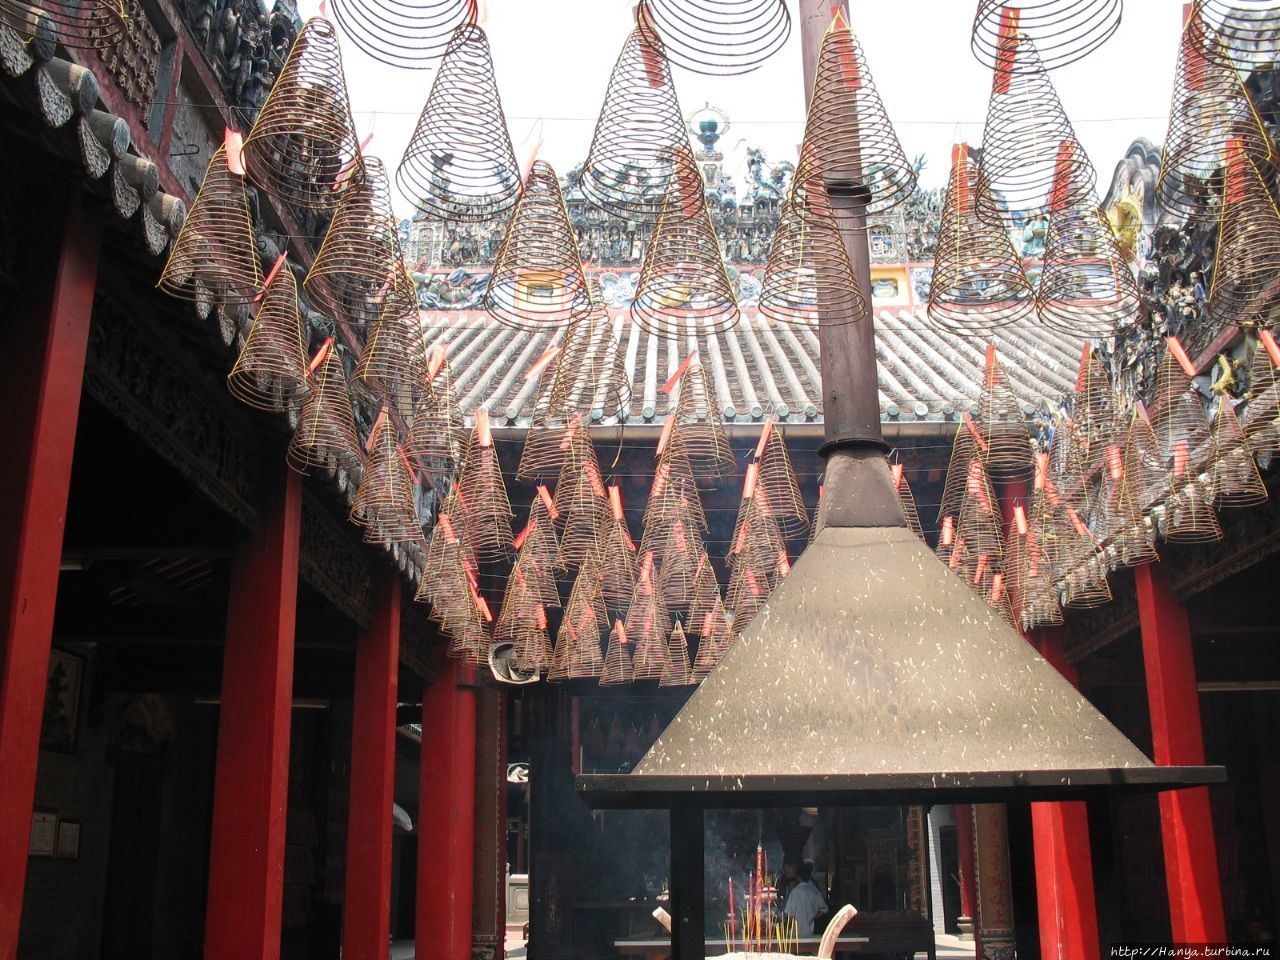 г.Хошимин. Пагода Тхиенхау, или Небесной женщины. Поминальные курительницы Хошимин, Вьетнам